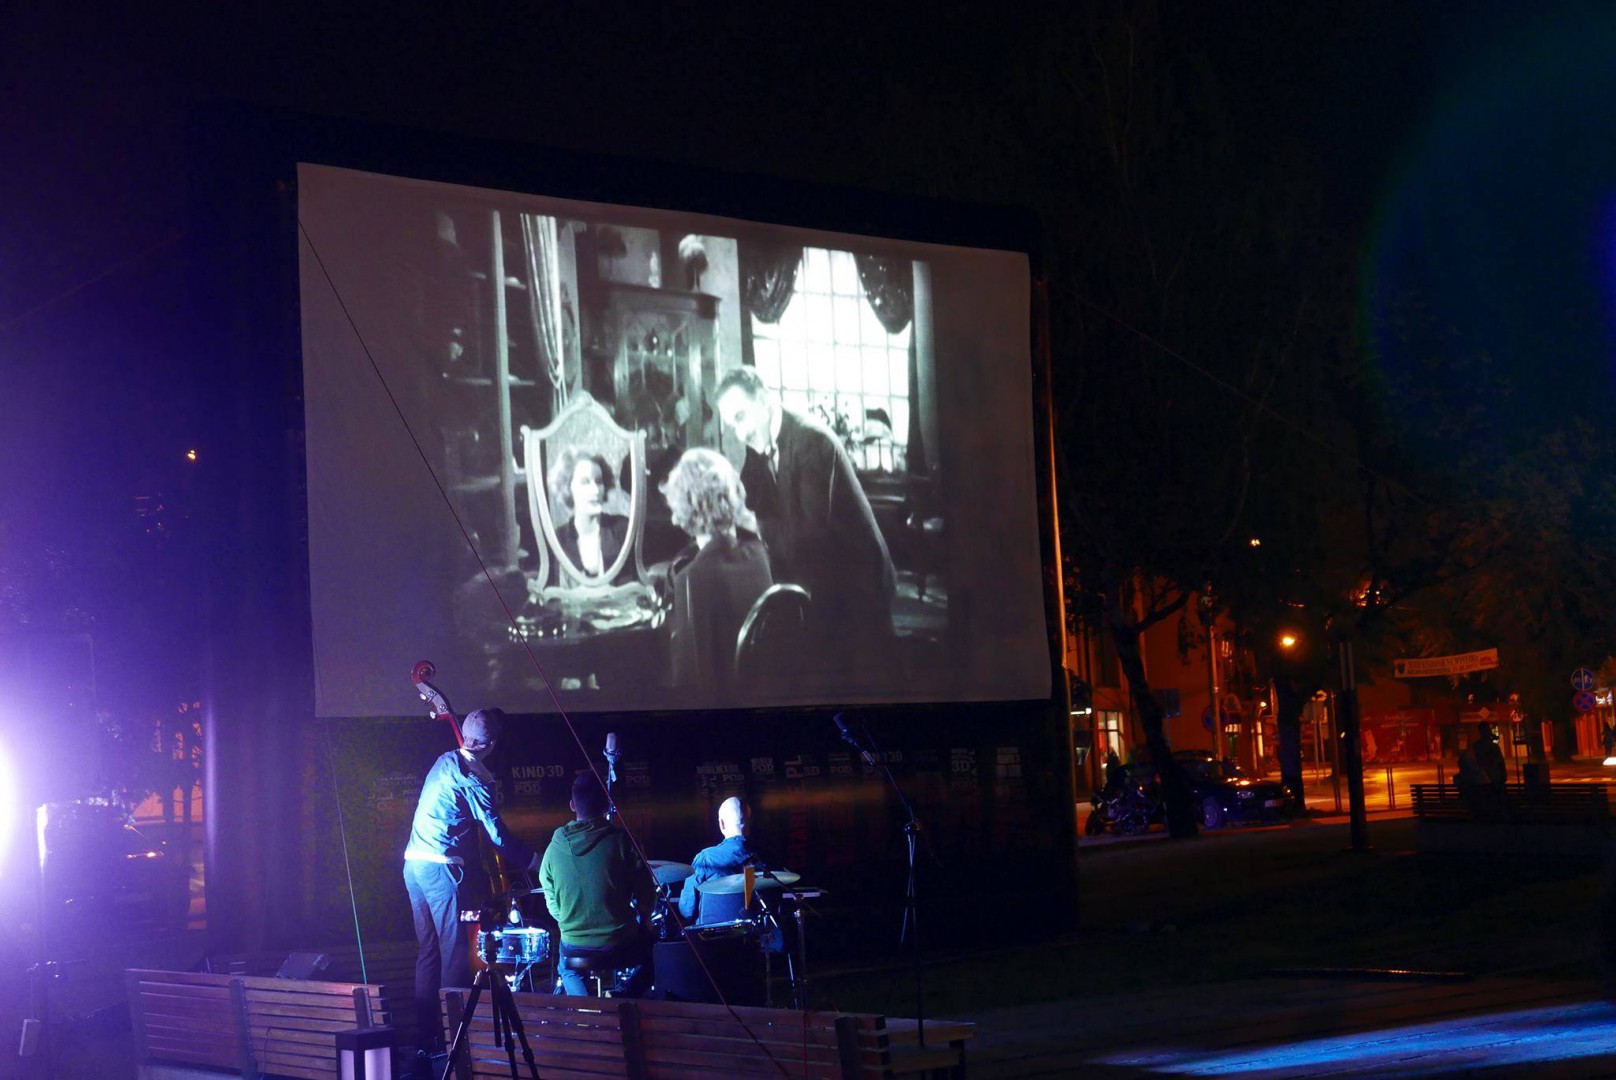 Zdjęcie przedstawia noc, duży ekran kinowy a na jego tle muzyków z instrumentami